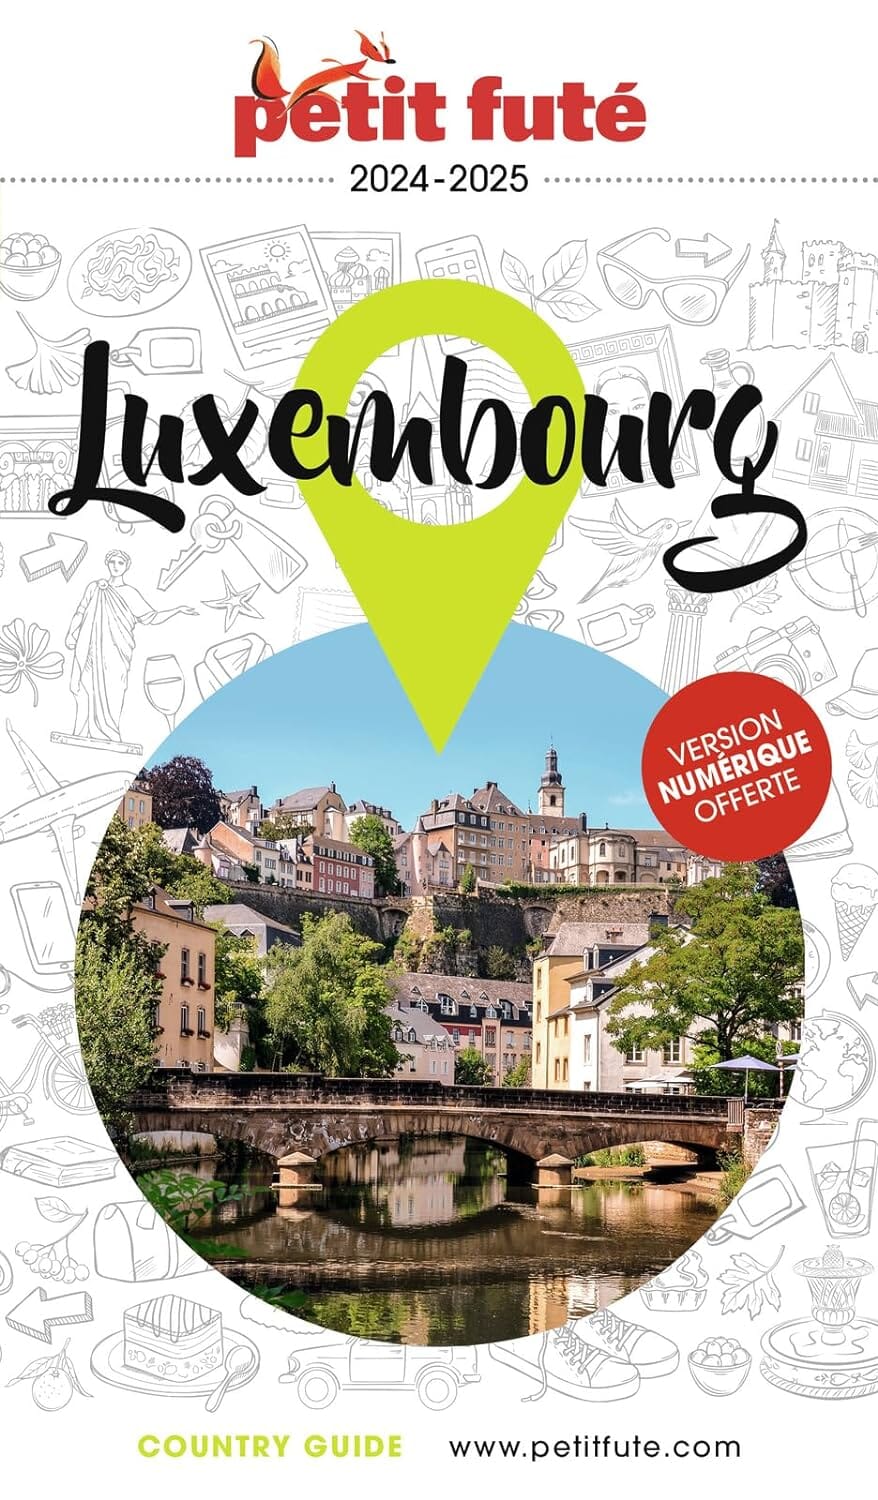 Guide de voyage - Luxembourg 2024/25 | Petit Futé guide de voyage Petit Futé 